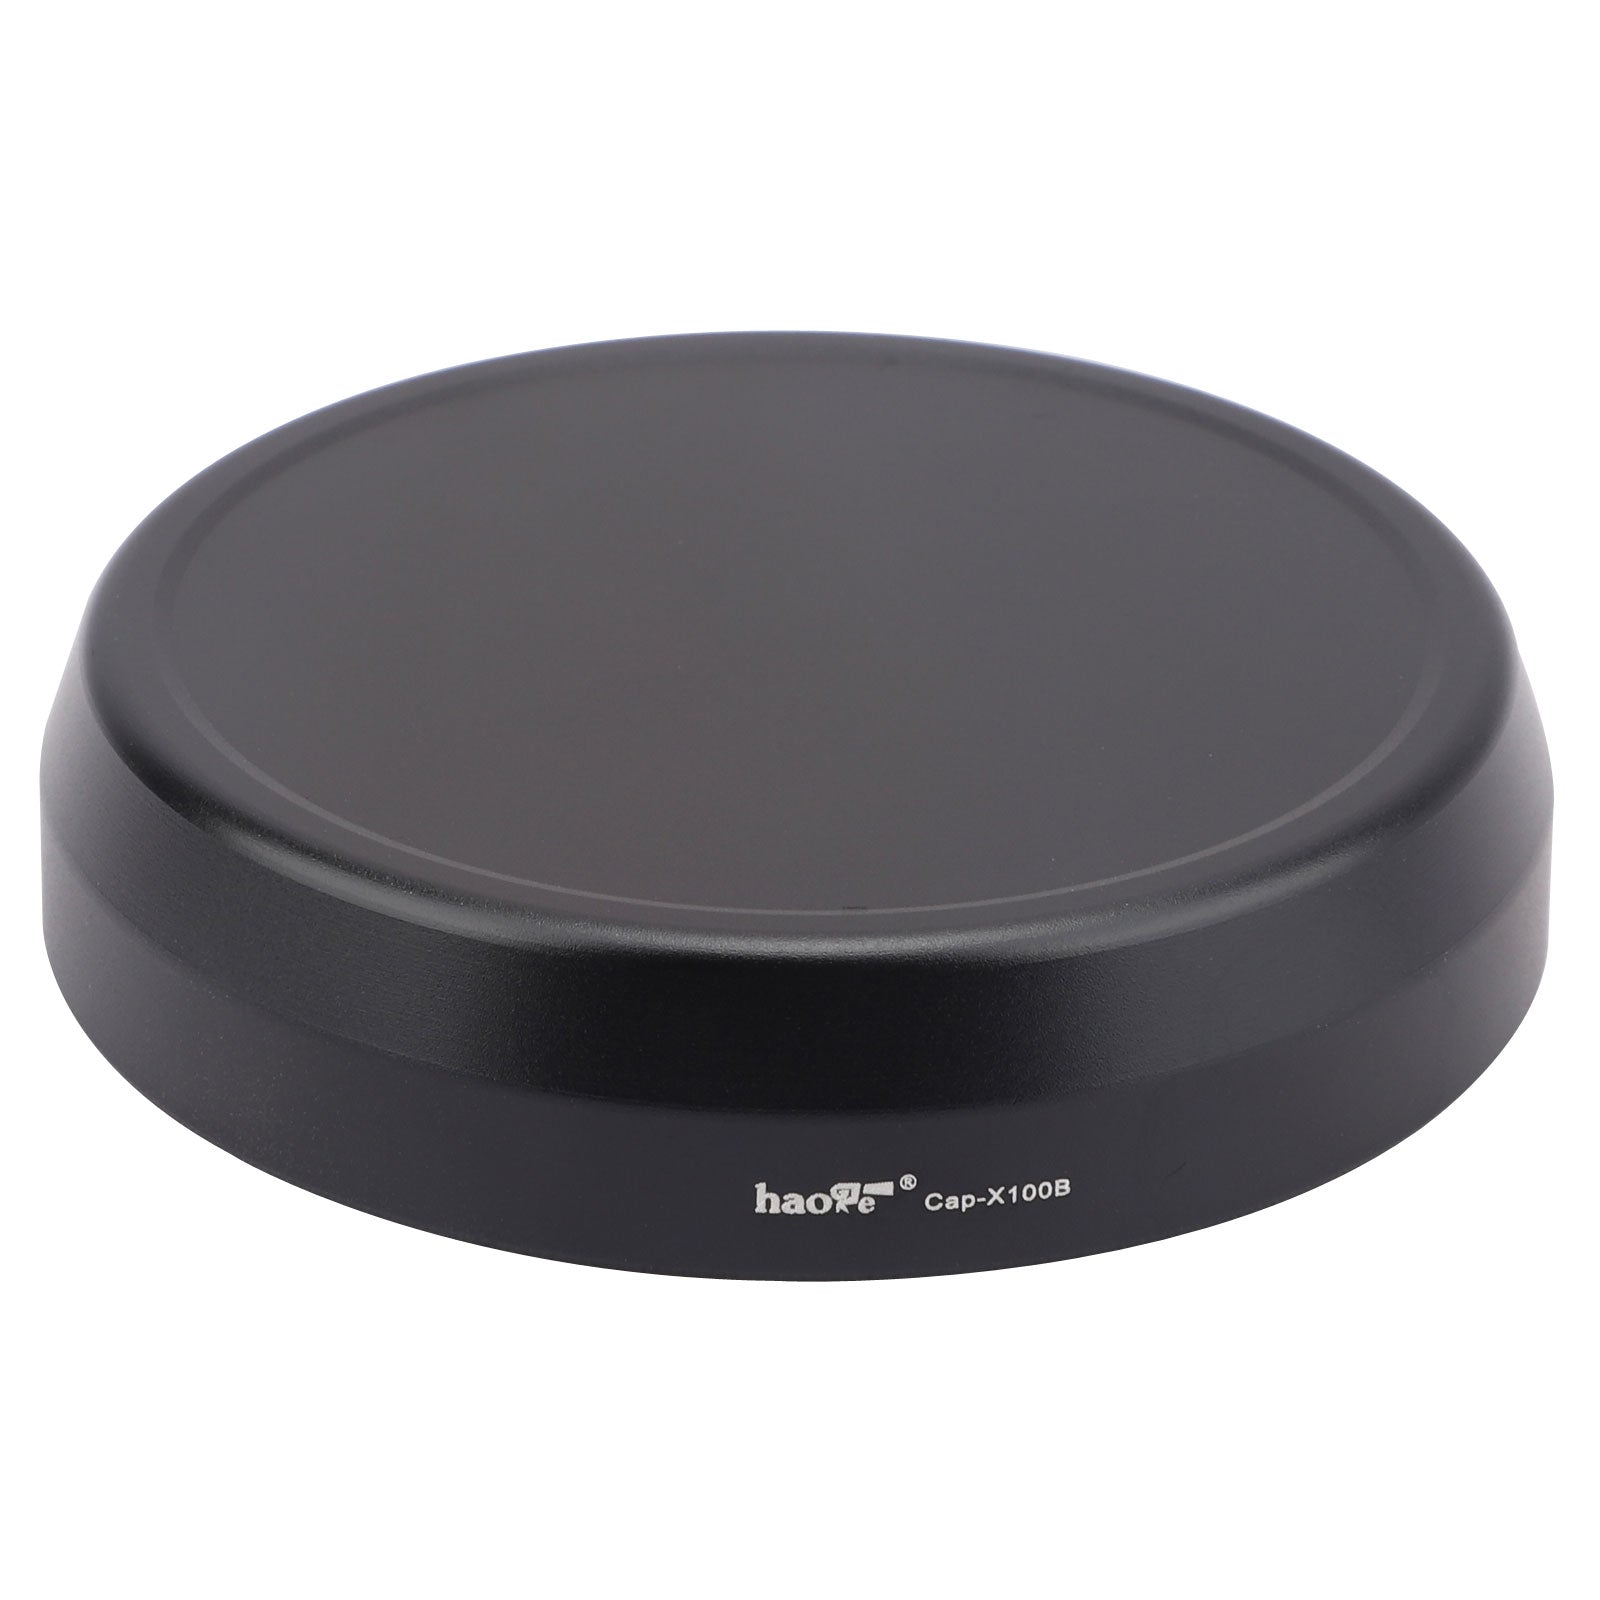 Haoge Cap-X100B Metal Lens Cap for Fujifilm Fuji X100F X100S X100T X100 X70 Camera Black